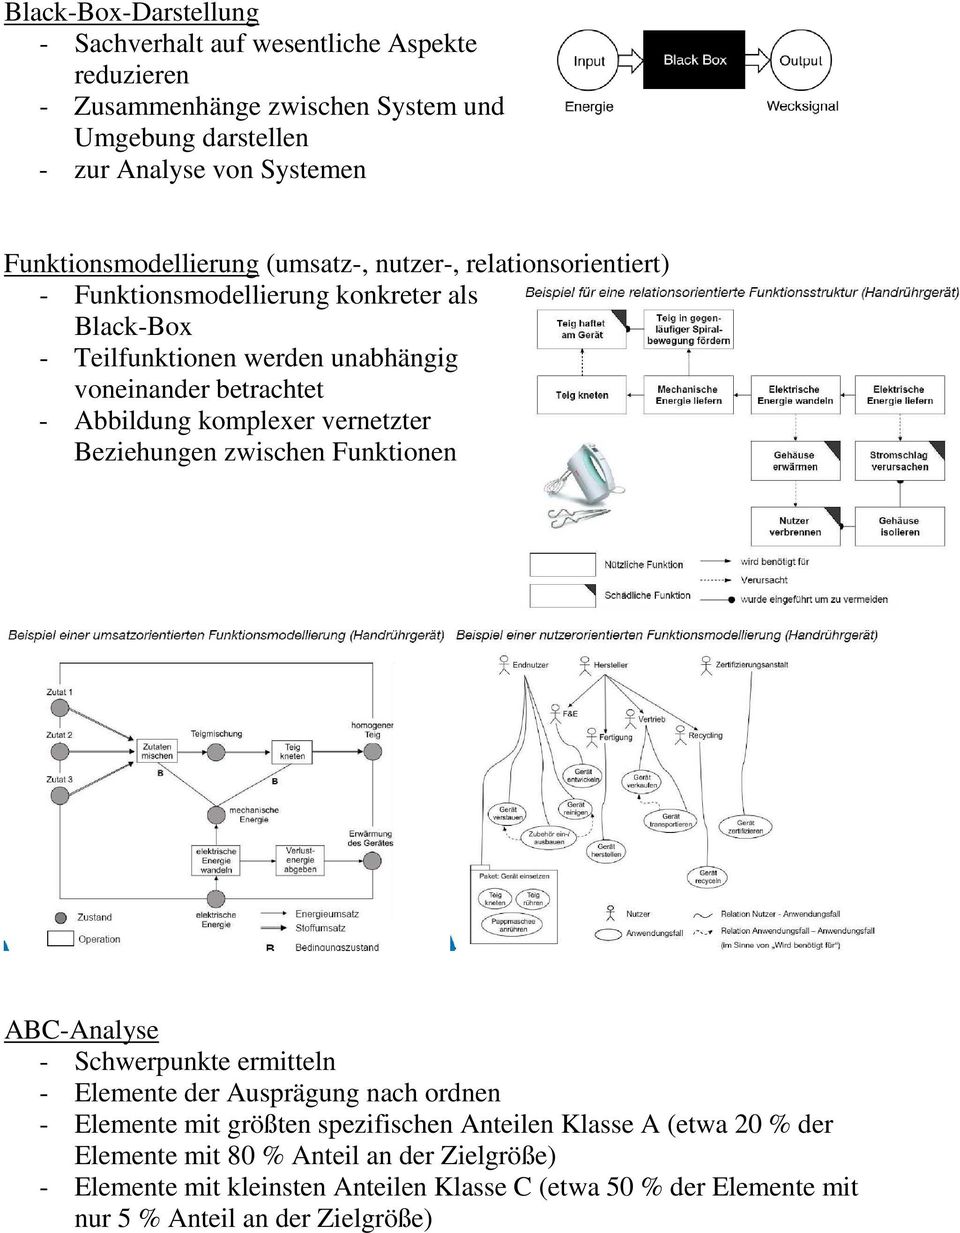 Abbildung komplexer vernetzter Beziehungen zwischen Funktionen ABC-Analyse - Schwerpunkte ermitteln - Elemente der Ausprägung nach ordnen - Elemente mit größten